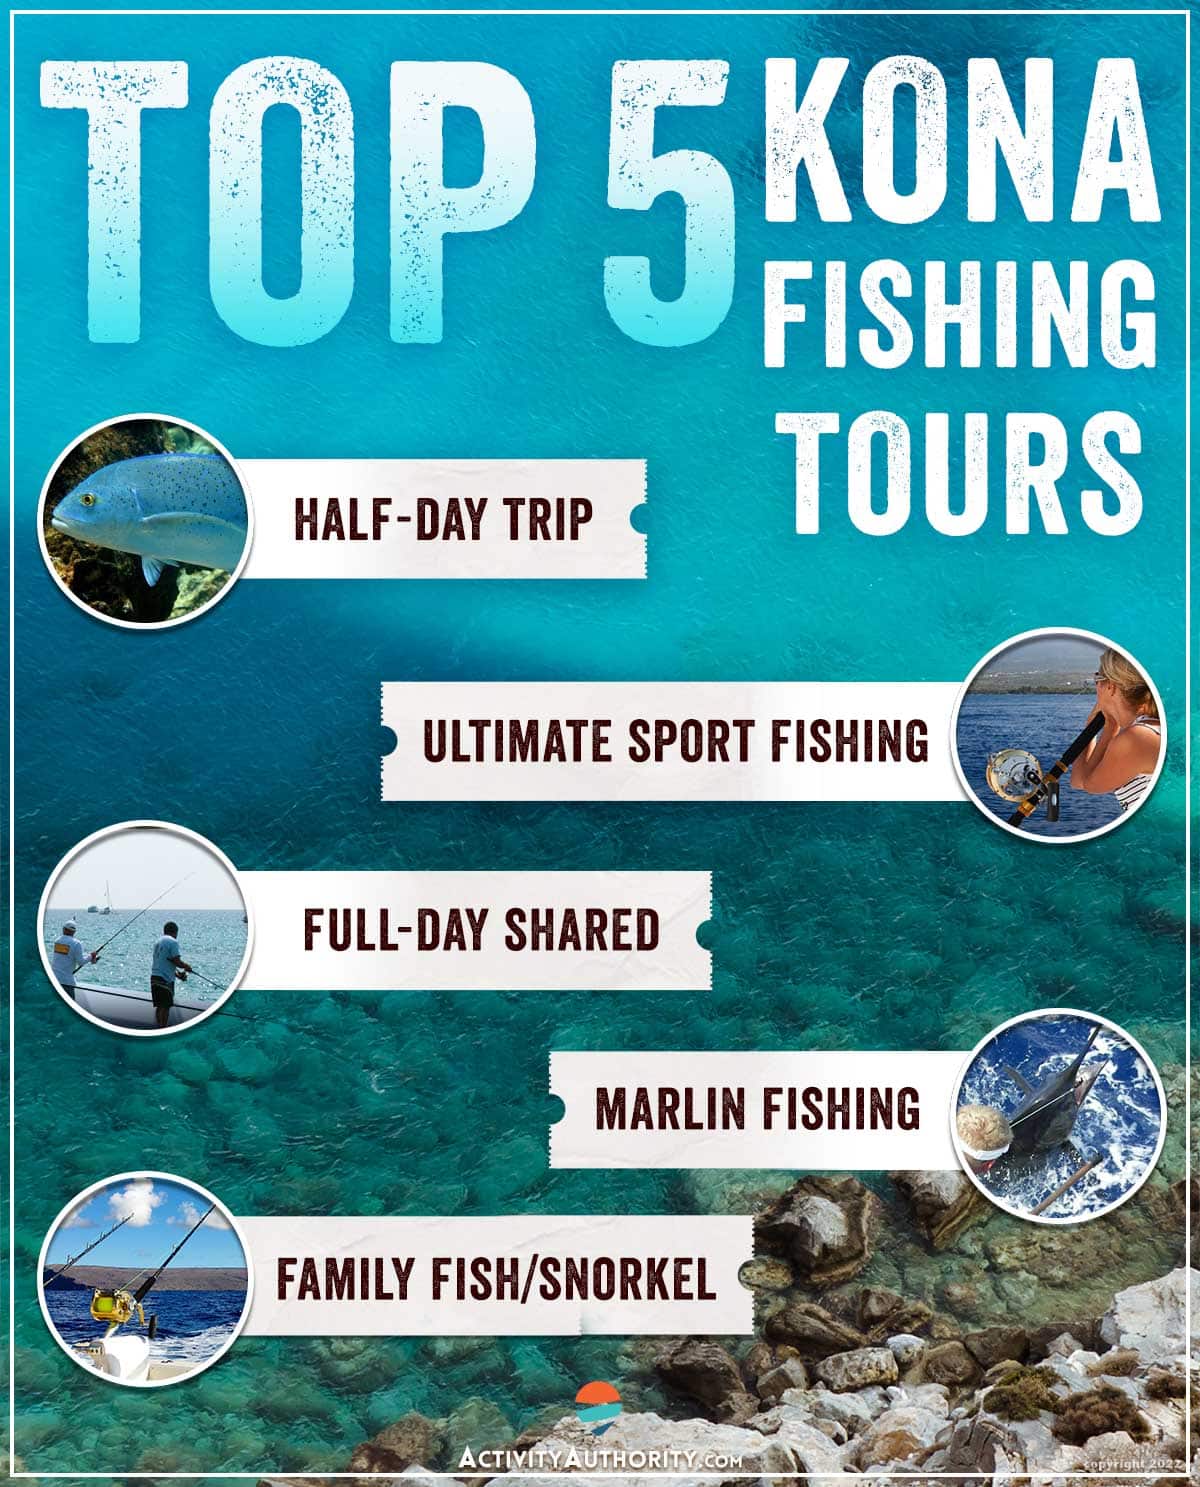 Kona fishing charters